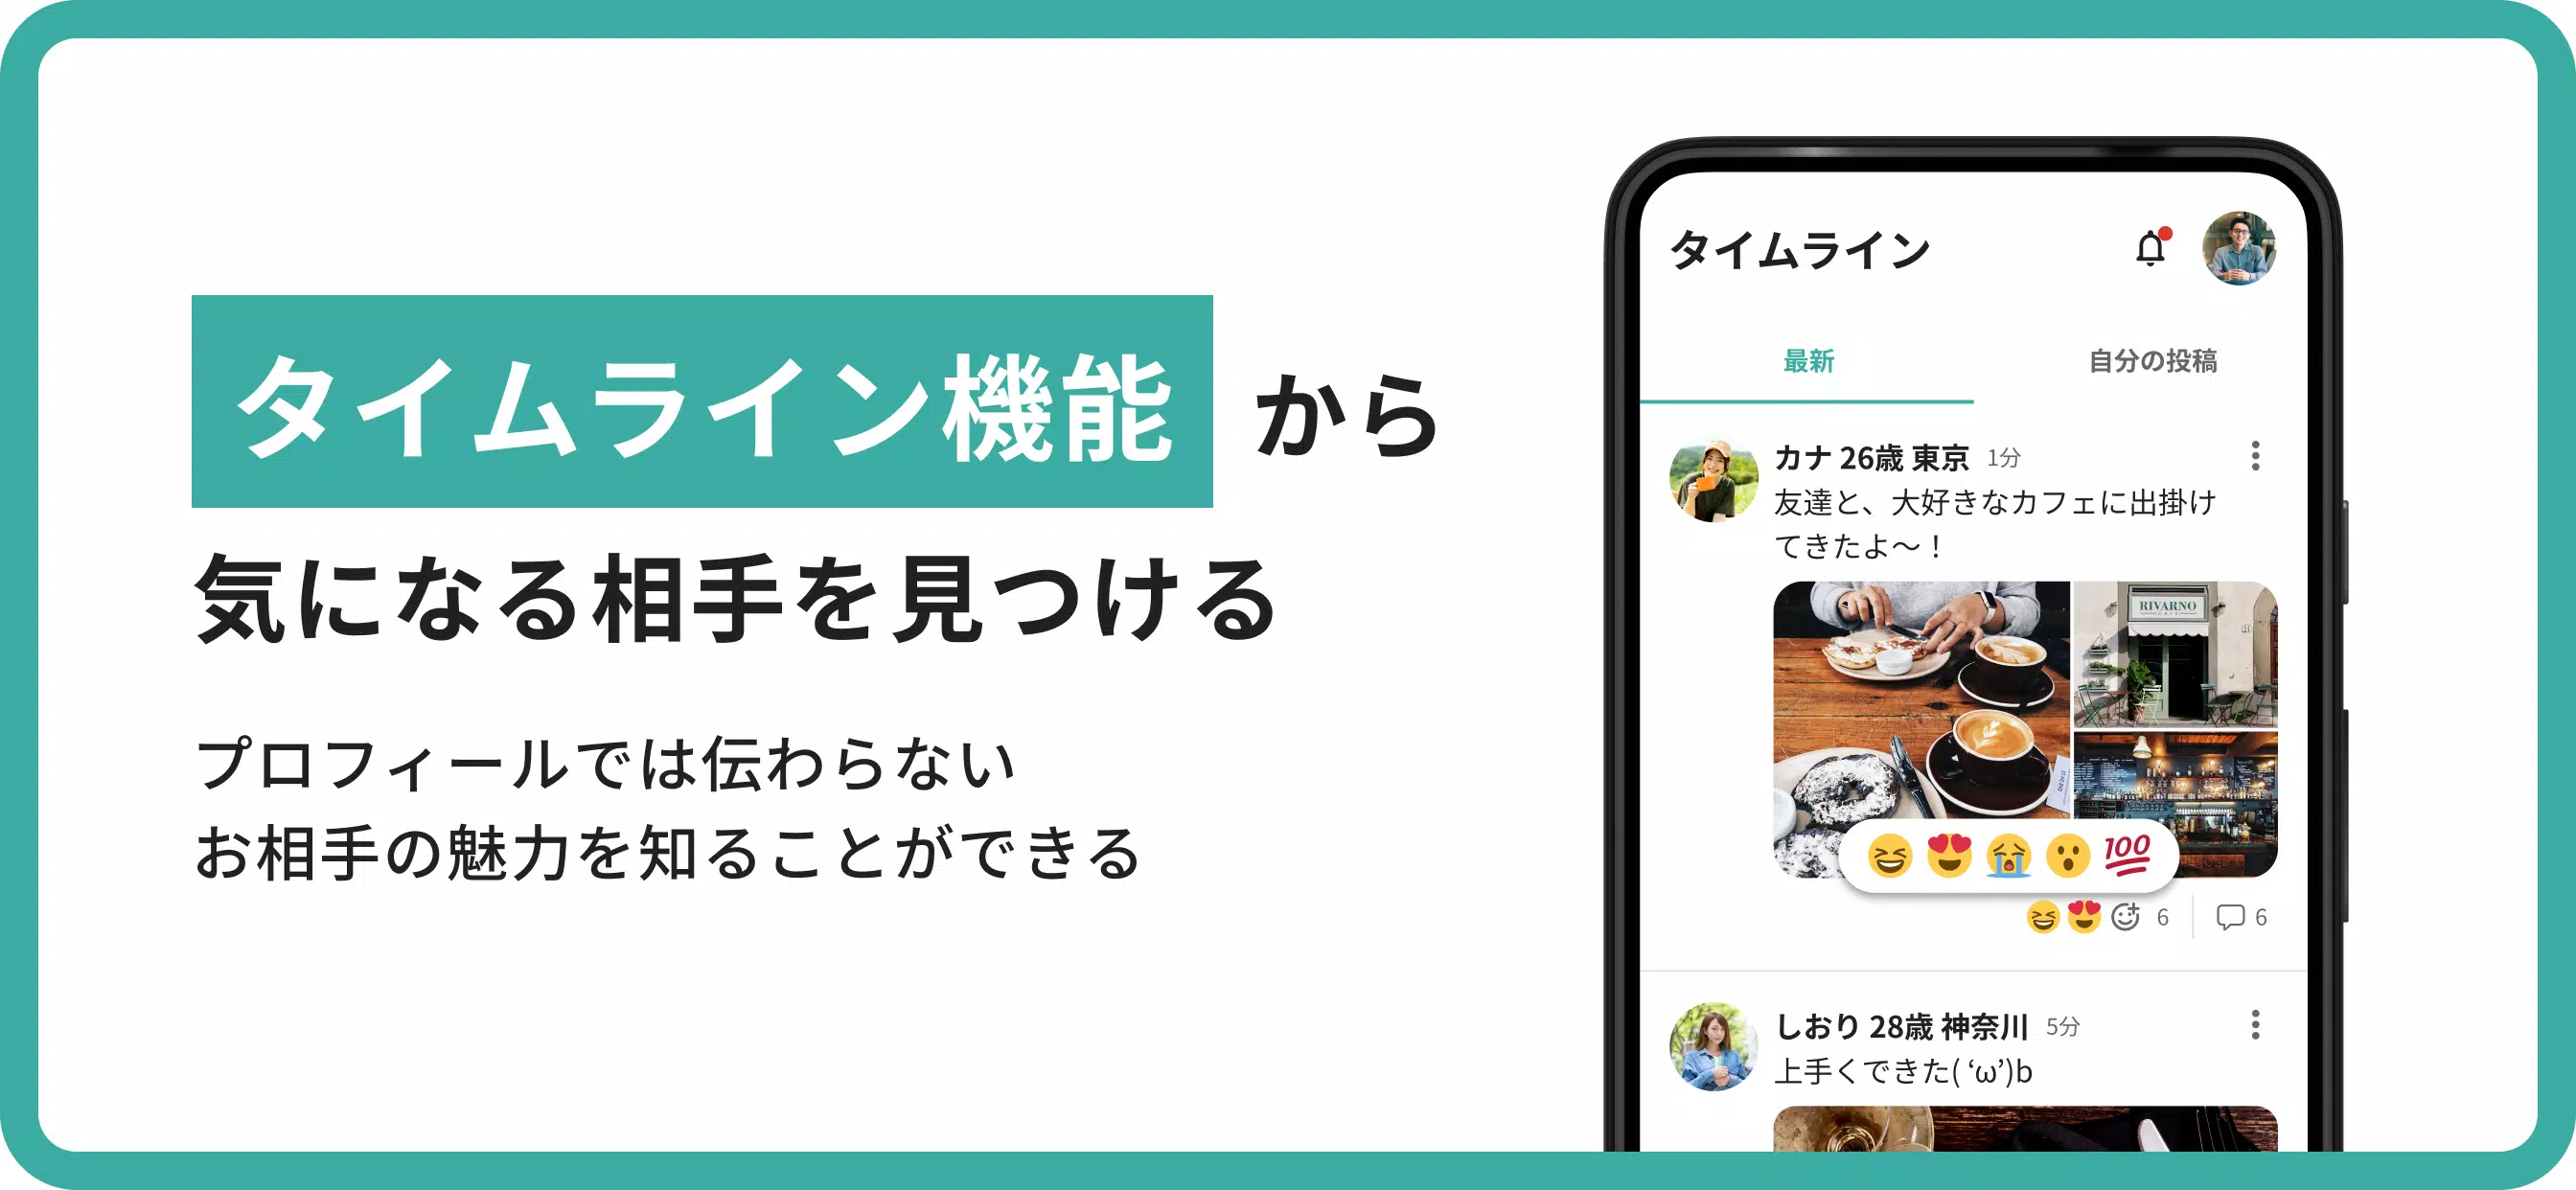 Skachat Scenario シナリオ 恋活 婚活マッチングアプリ Apk Dlya Android